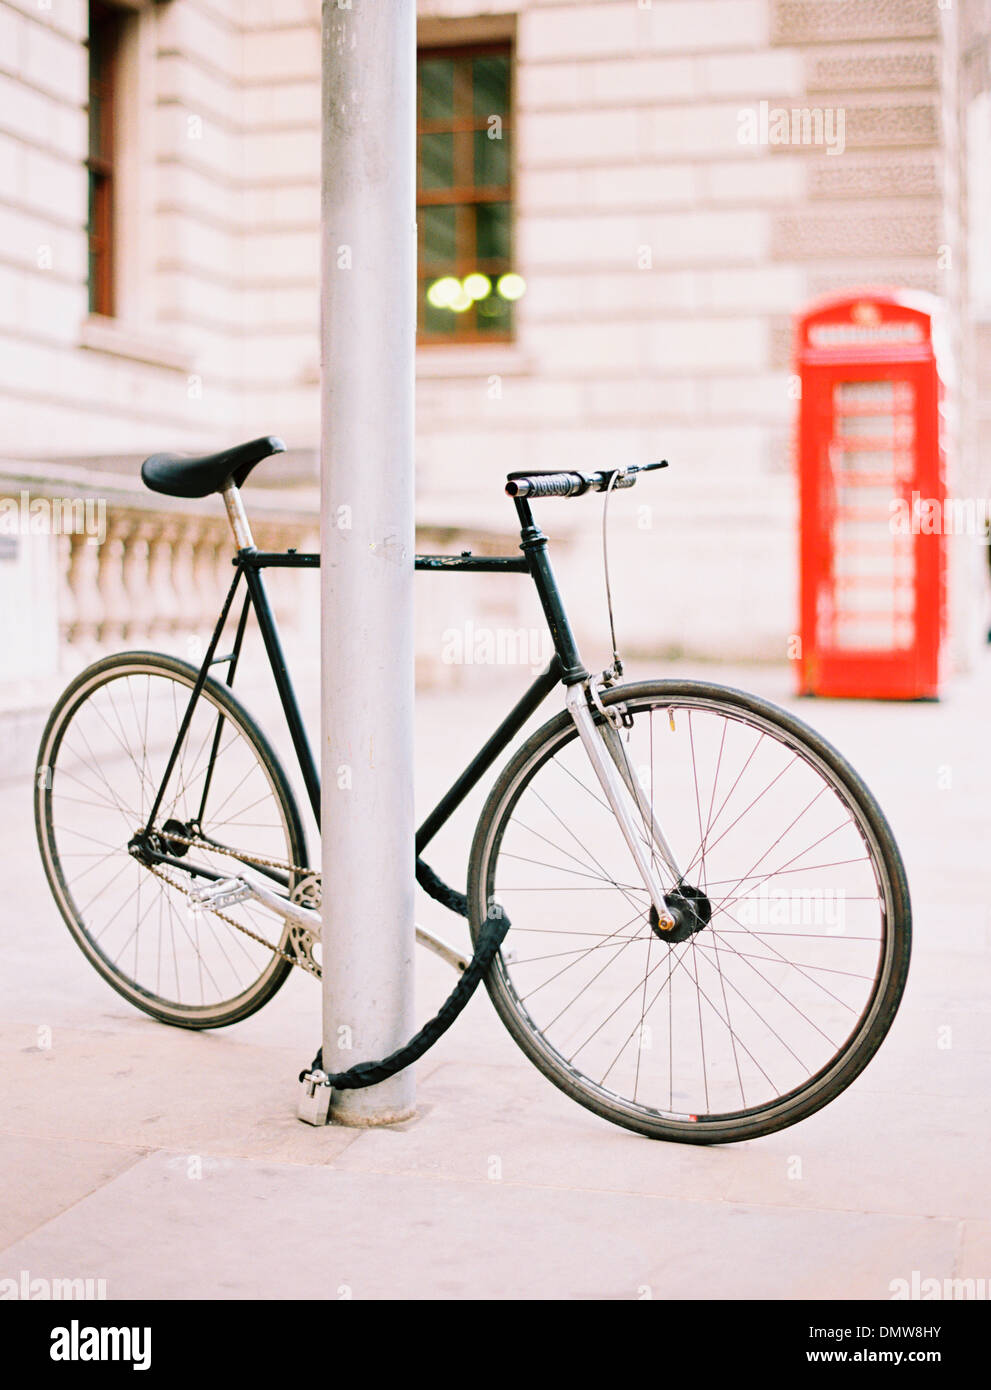 Un vélo enchaîné et attaché à un lampadaire dans une rue de Londres. Un téléphone public fort rouge en arrière-plan. Banque D'Images